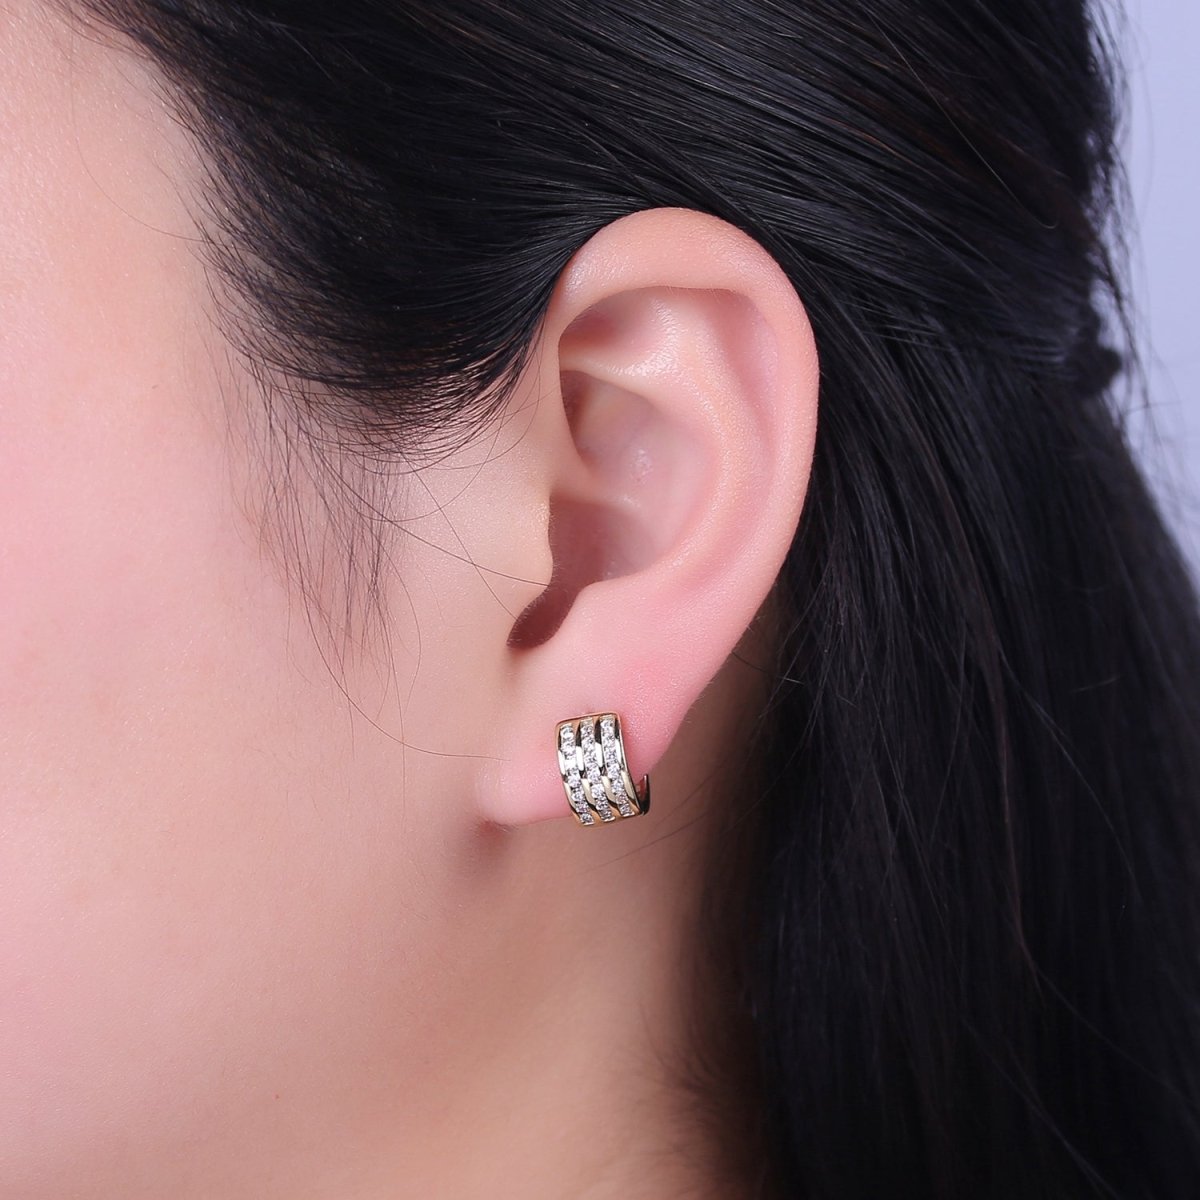 Triple Pave Gold Huggie Earrings, Thick Huggie 3 Lines CZ Diamond Hoop Earrings V-153 - DLUXCA